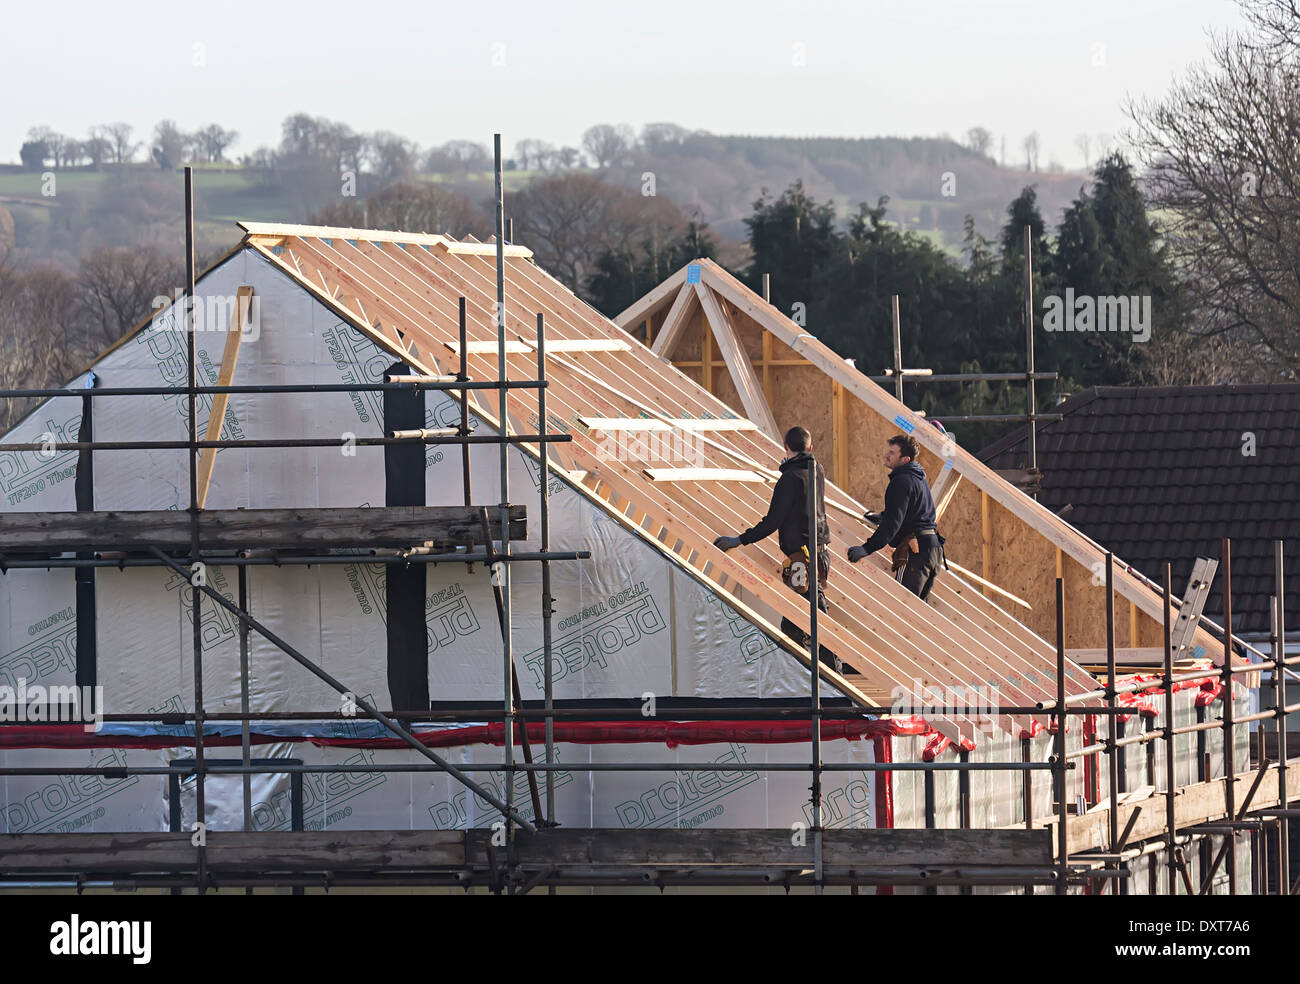 La couverture d'une maison de nouvelle construction dans le village de Llanfoist, Abergavenny, Pays de Galles, Royaume-Uni Banque D'Images